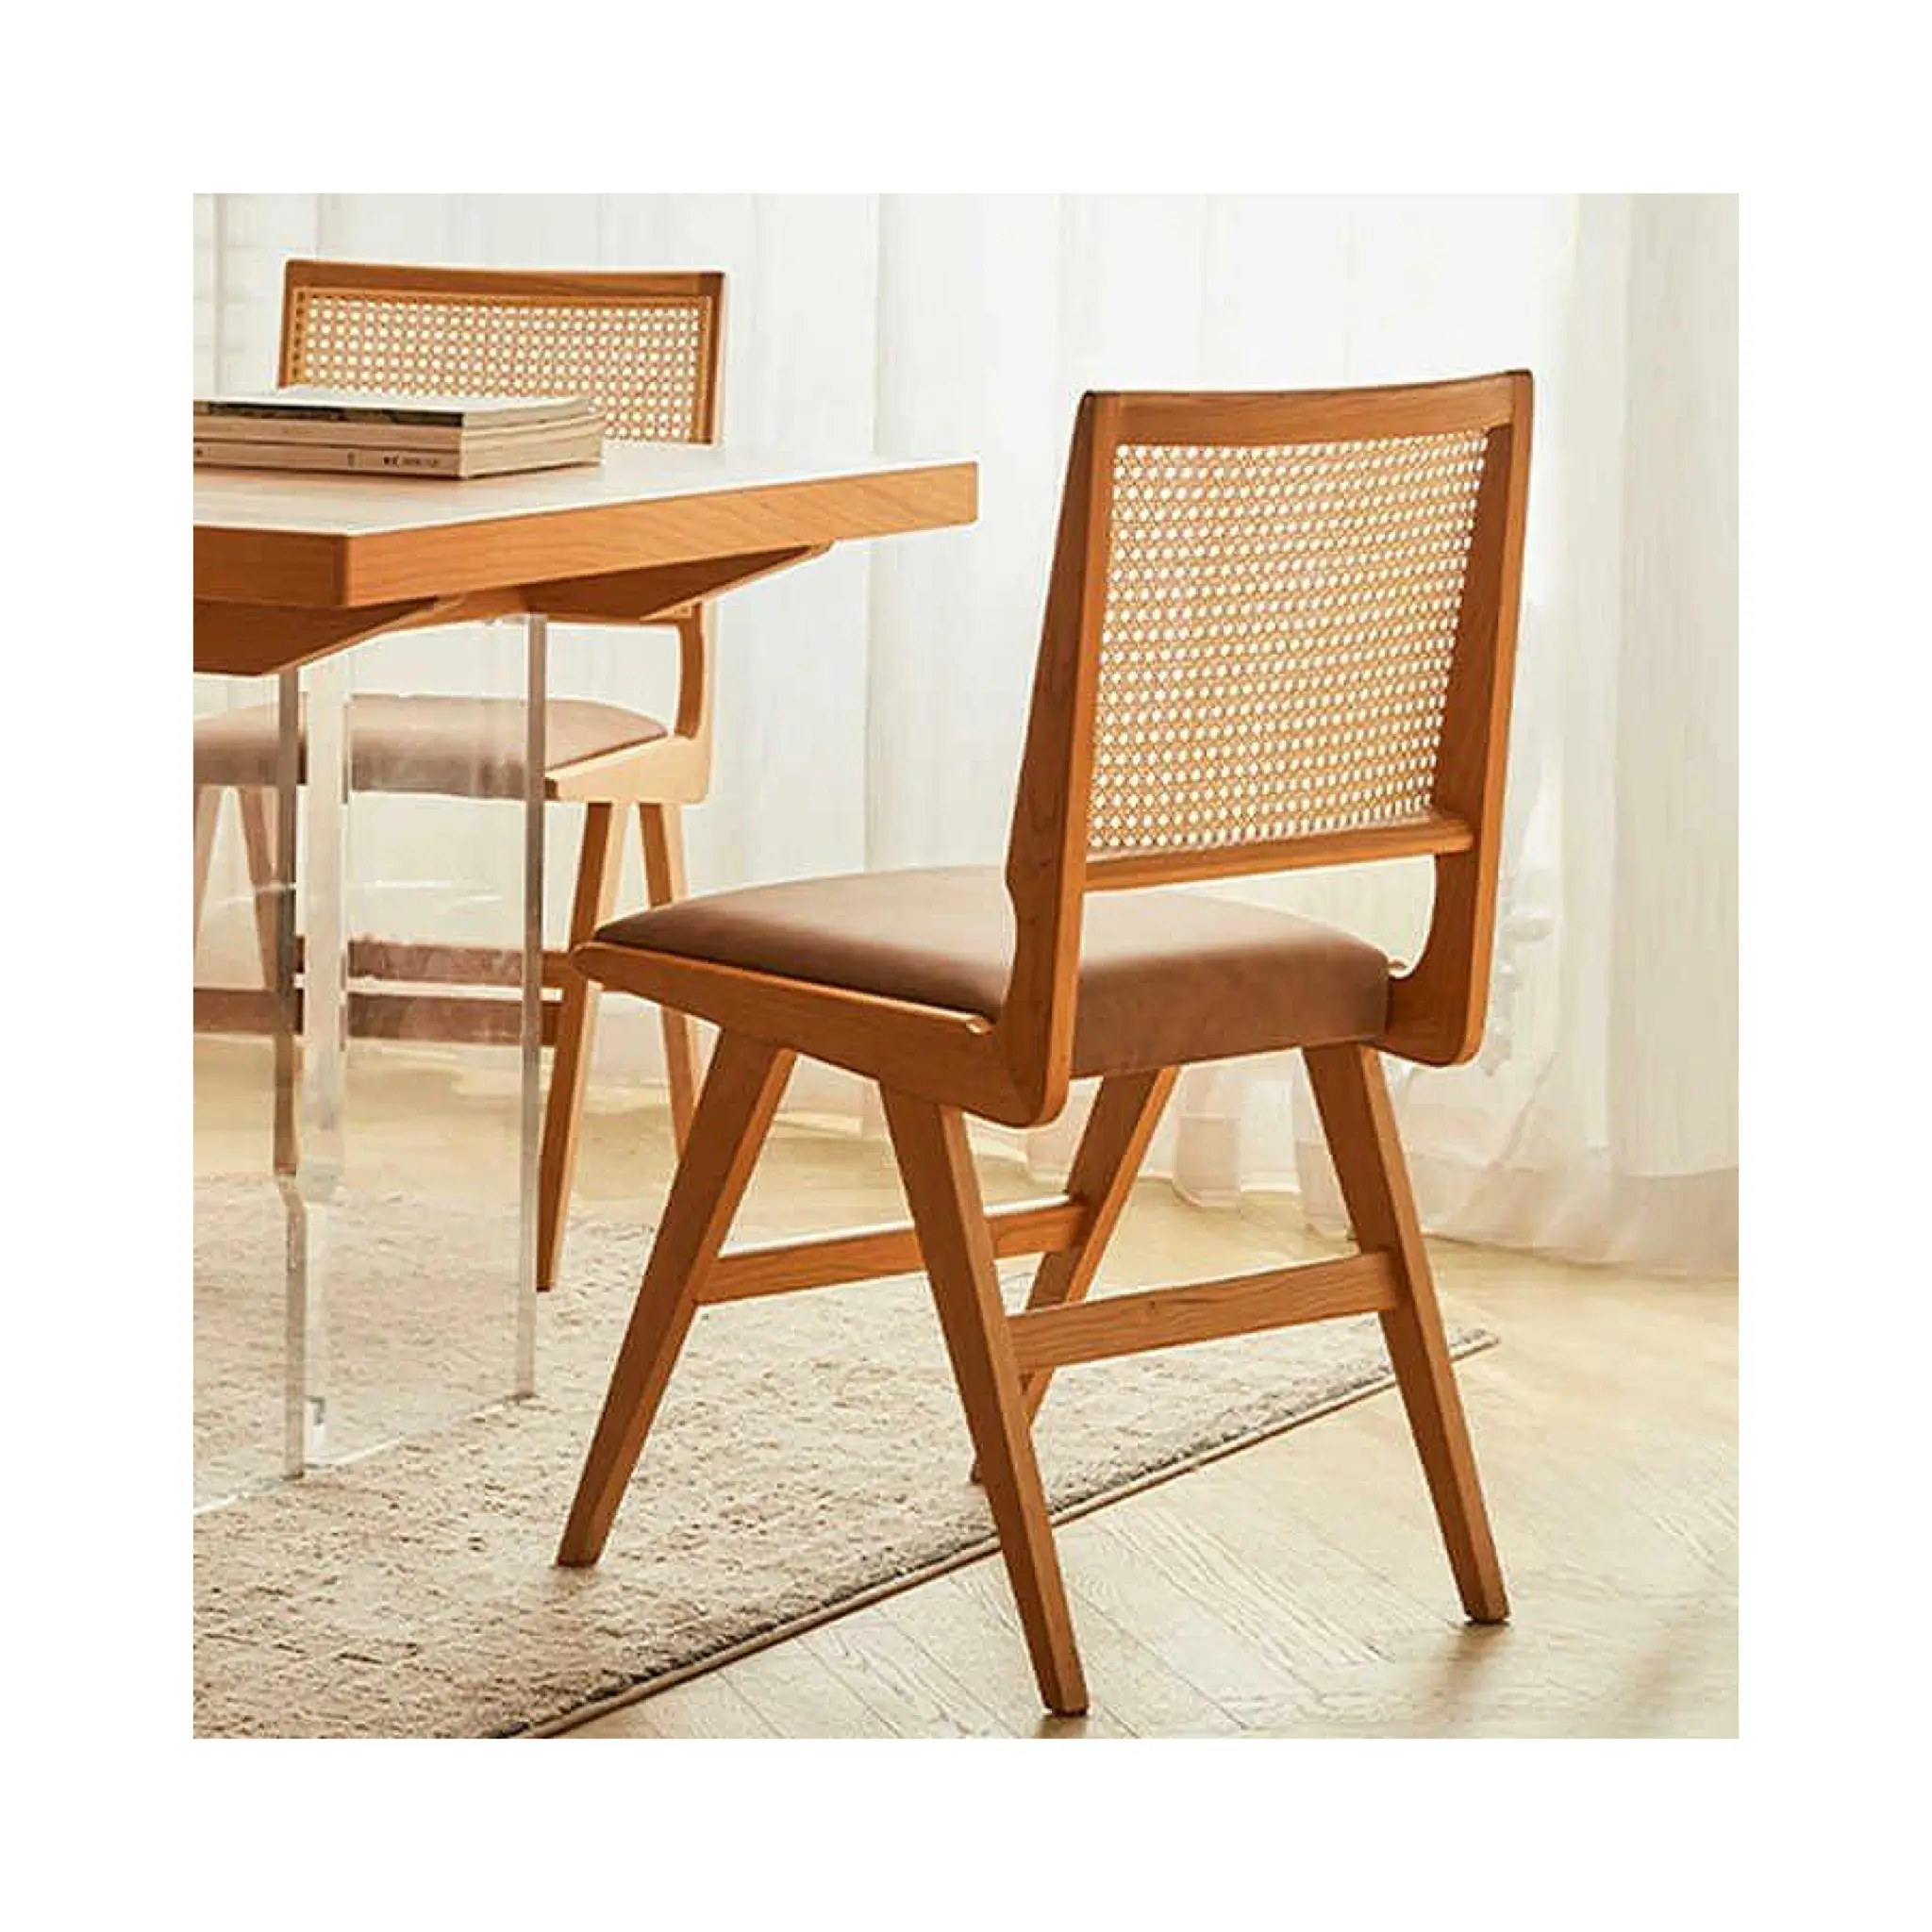 Chaise nordique Simple en bois massif pour hôtel, chaise pliante en rotin vietnamien, chaise de salle à manger en rotin en plein air, cadre en bois avec siège en rotin